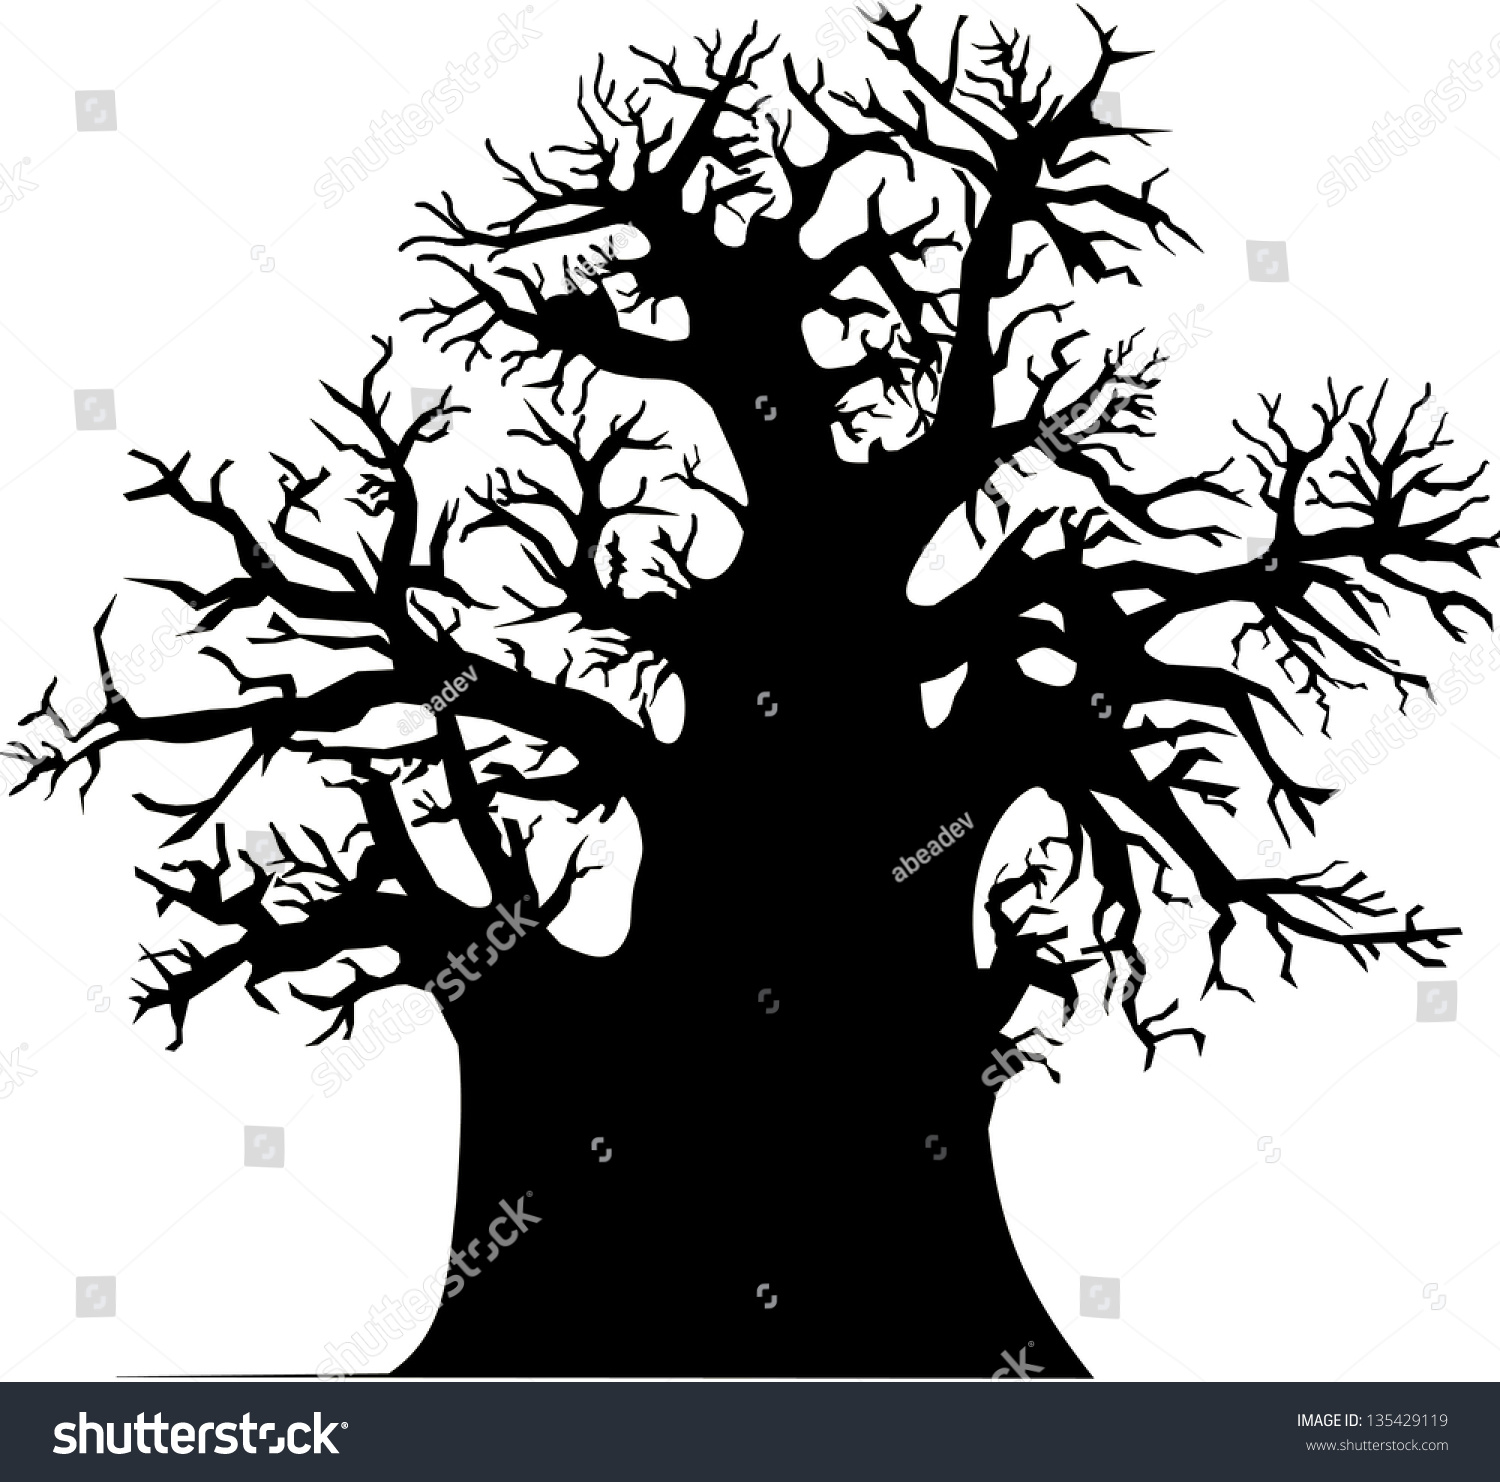 Tree Foto Stock 135429119 : Shutterstock